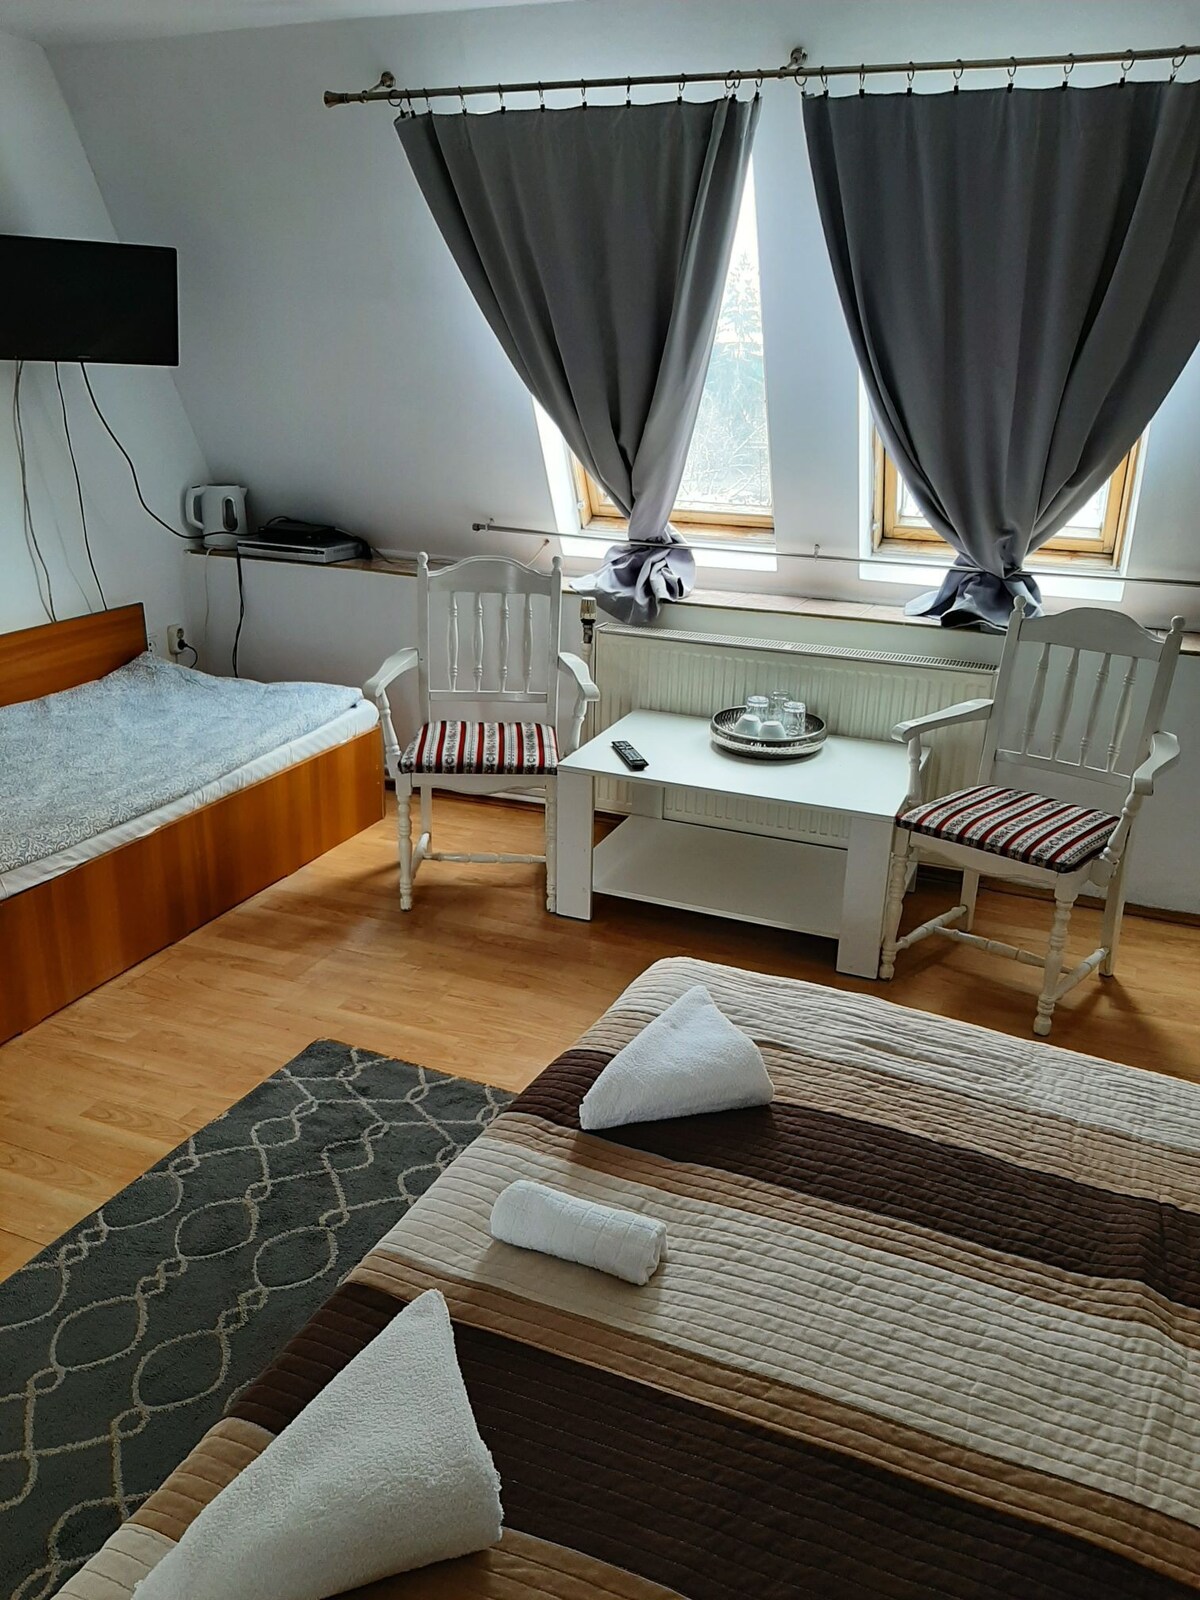 位于Cluj市中心的房间。